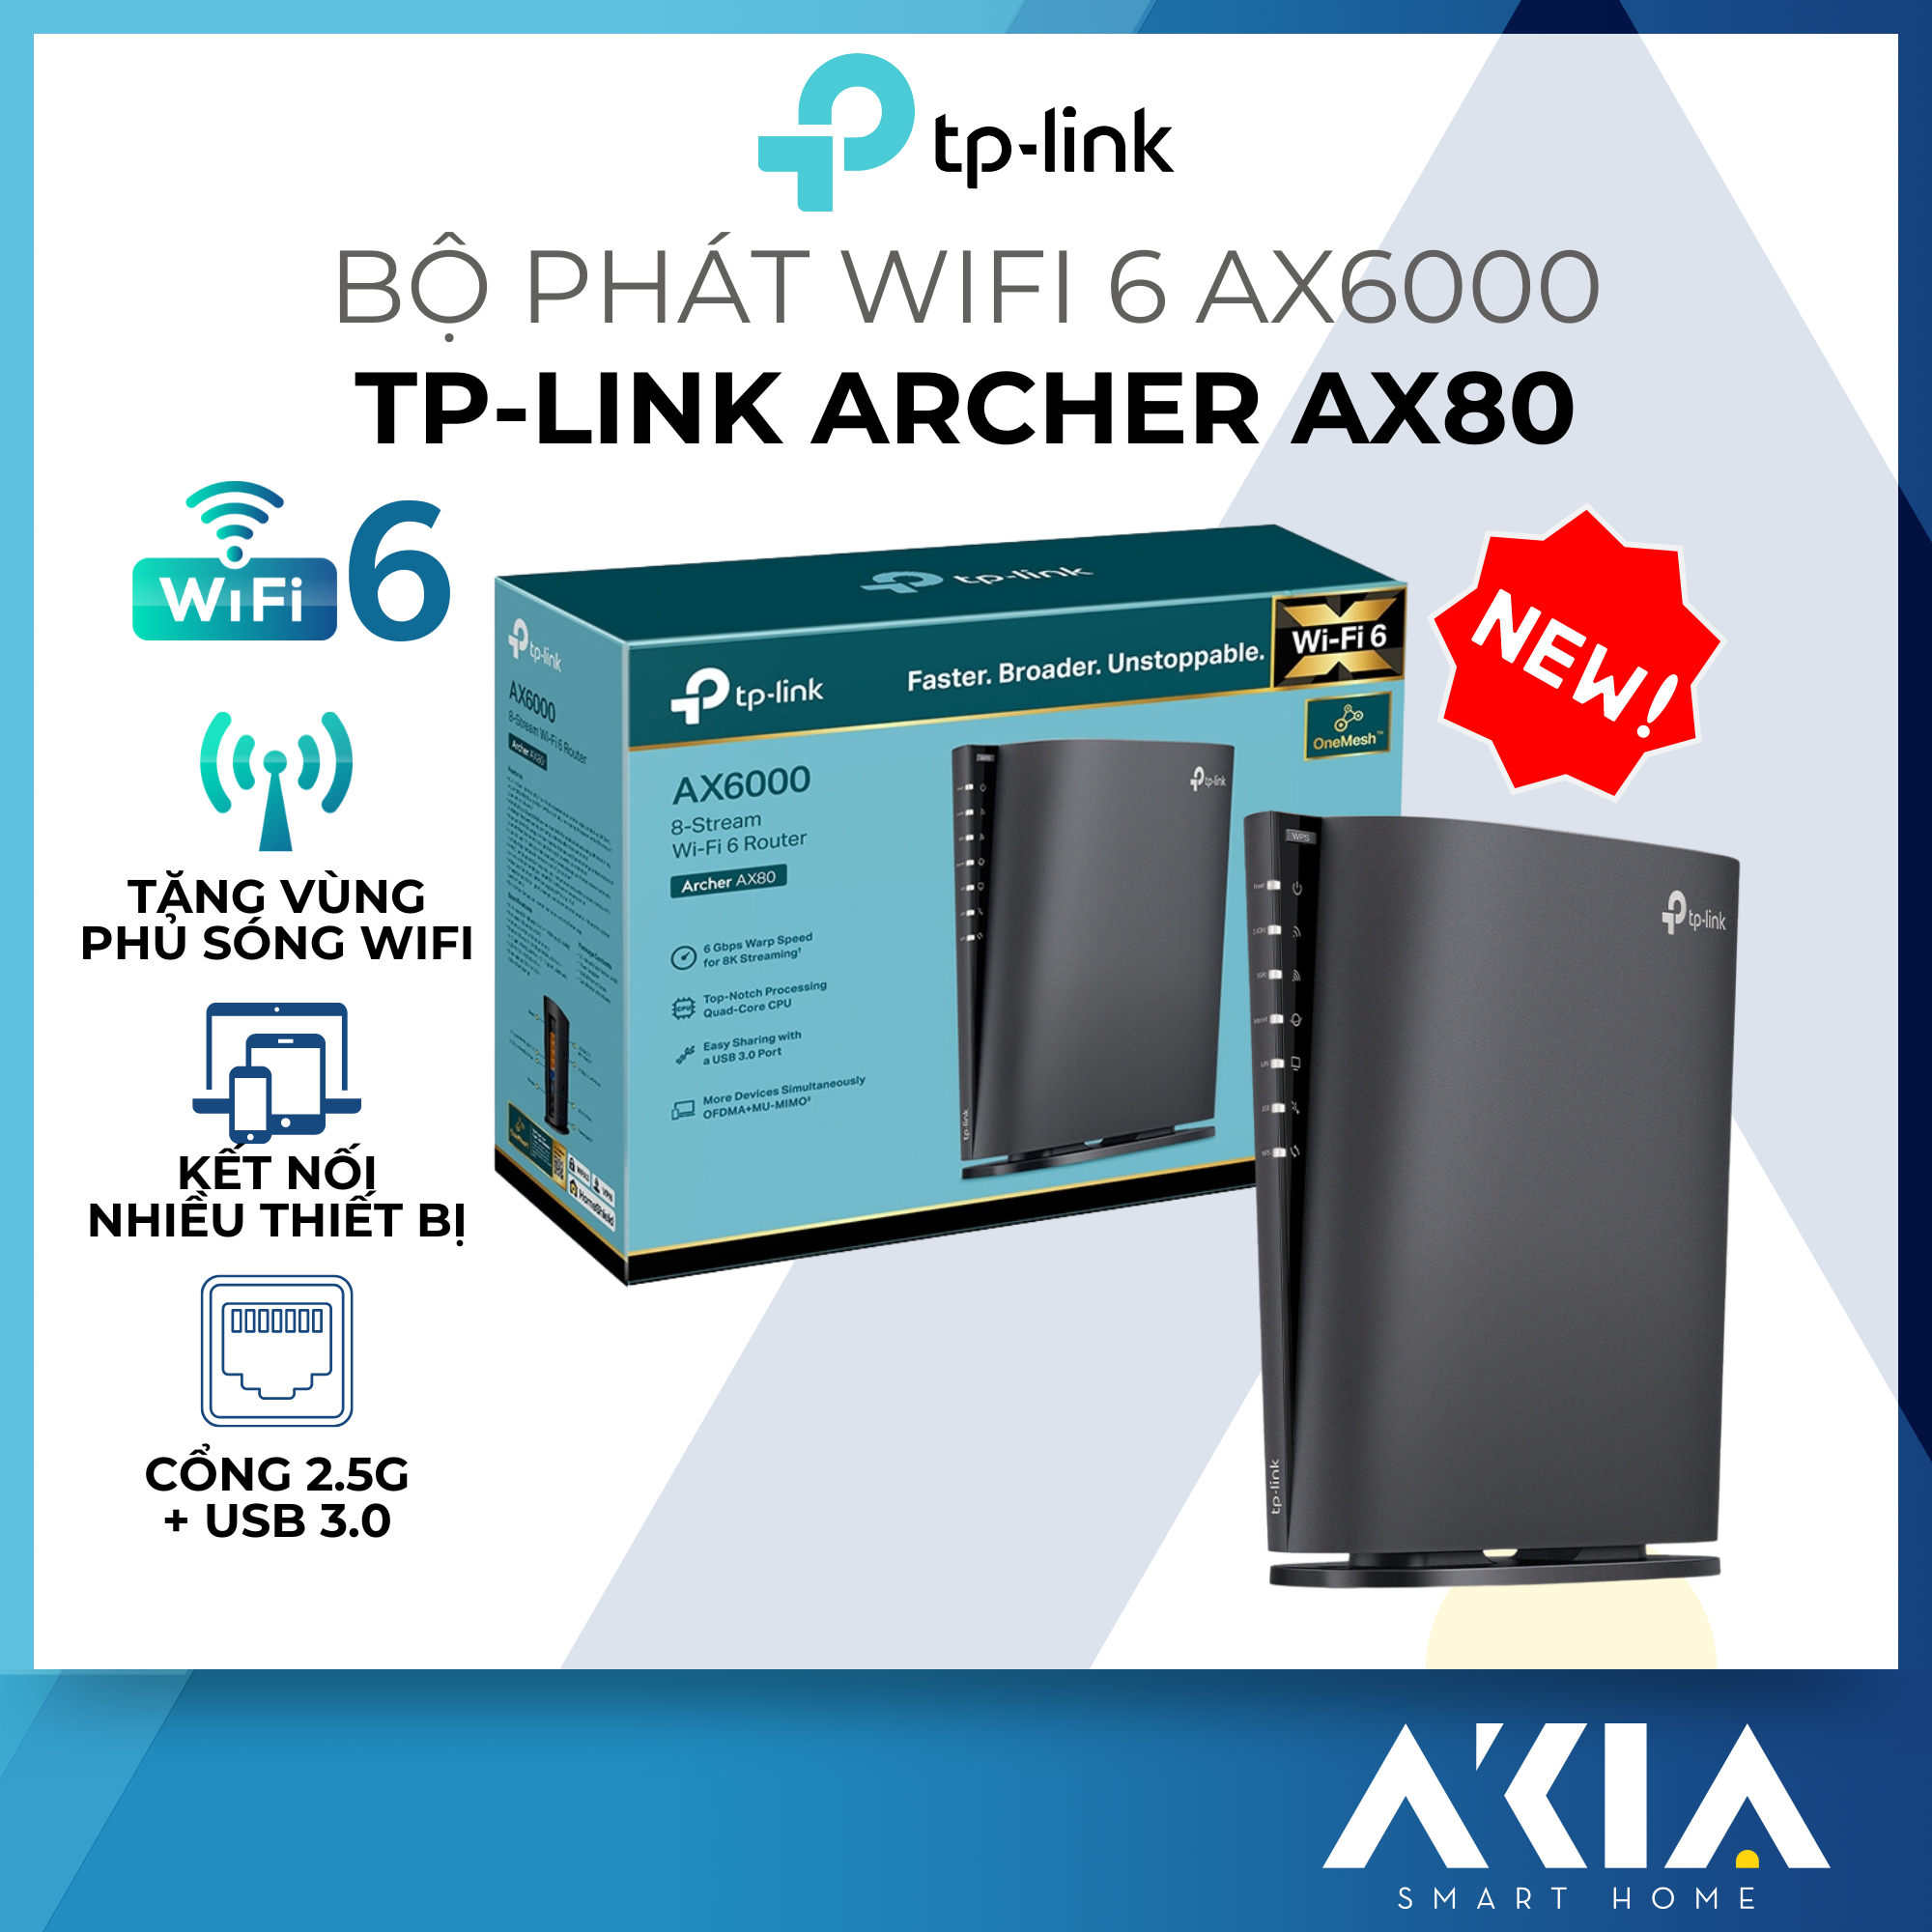 Bộ Phát Wifi TP-Link Archer AX80 8 Luồng Với Cổng 2.5G AX6000 - HÀNG CHÍNH HÃNG